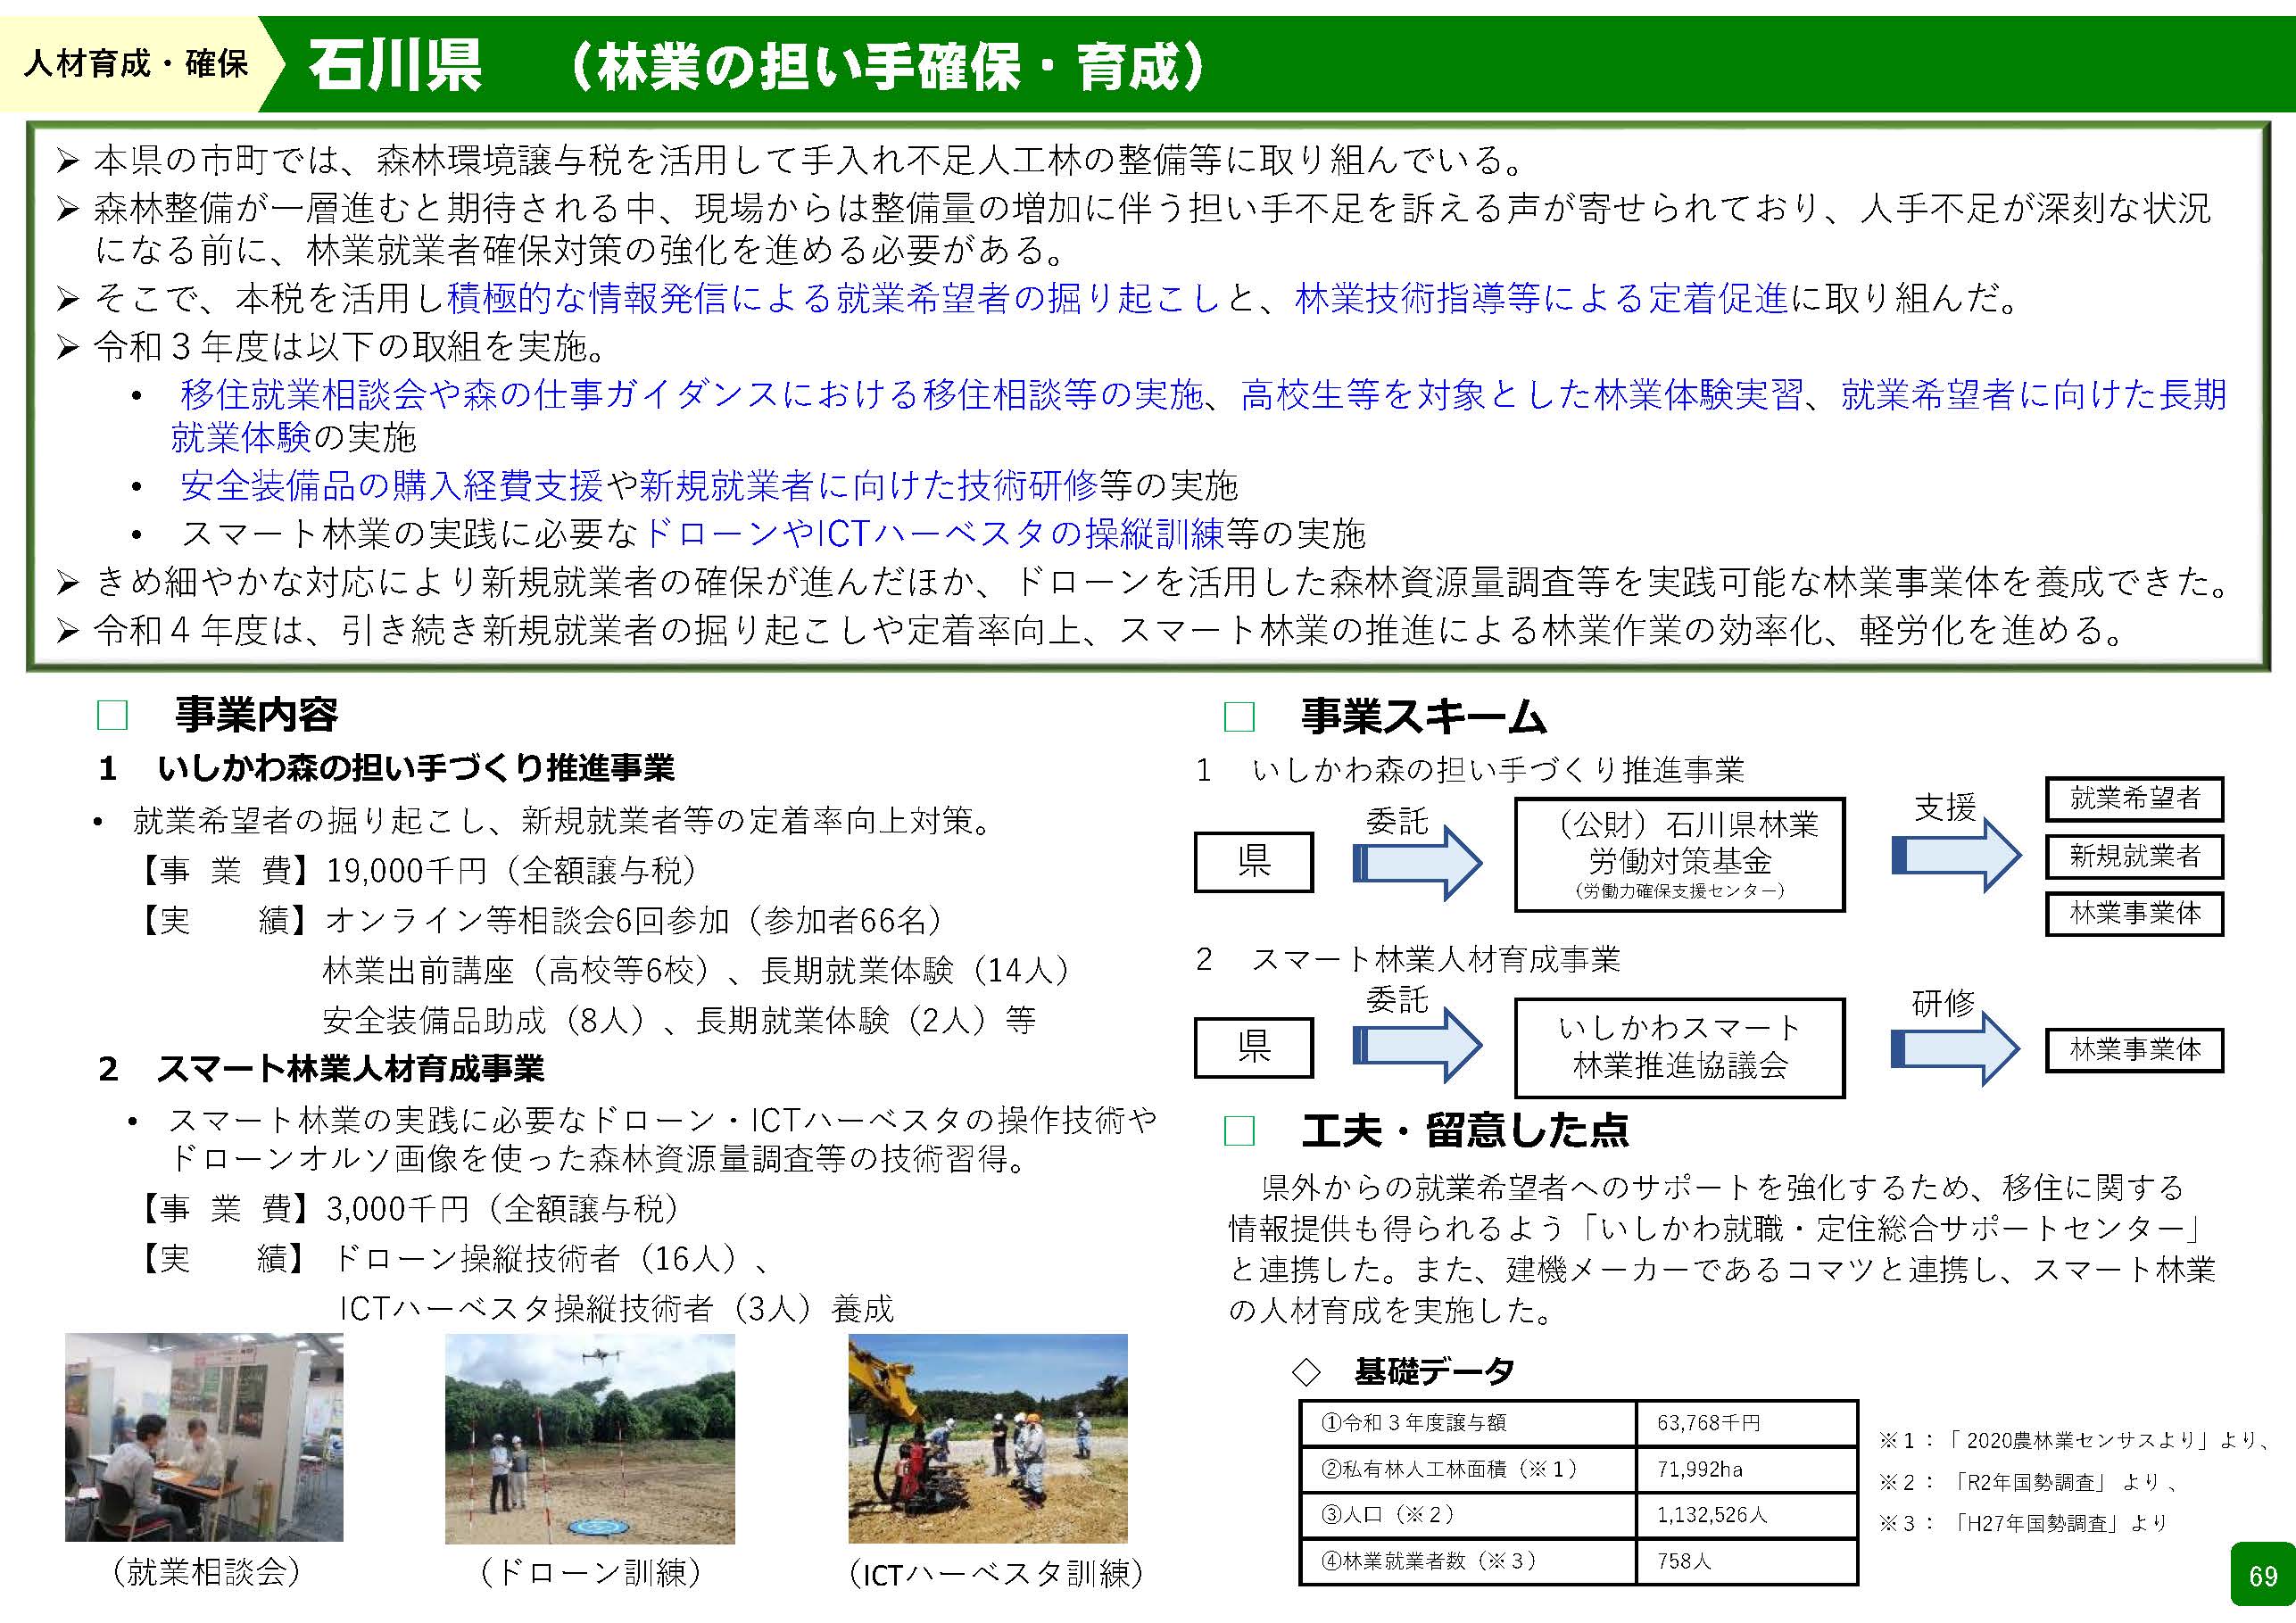 森林環境譲与税を活用した自治体の取組の紹介 Vol.10 石川県